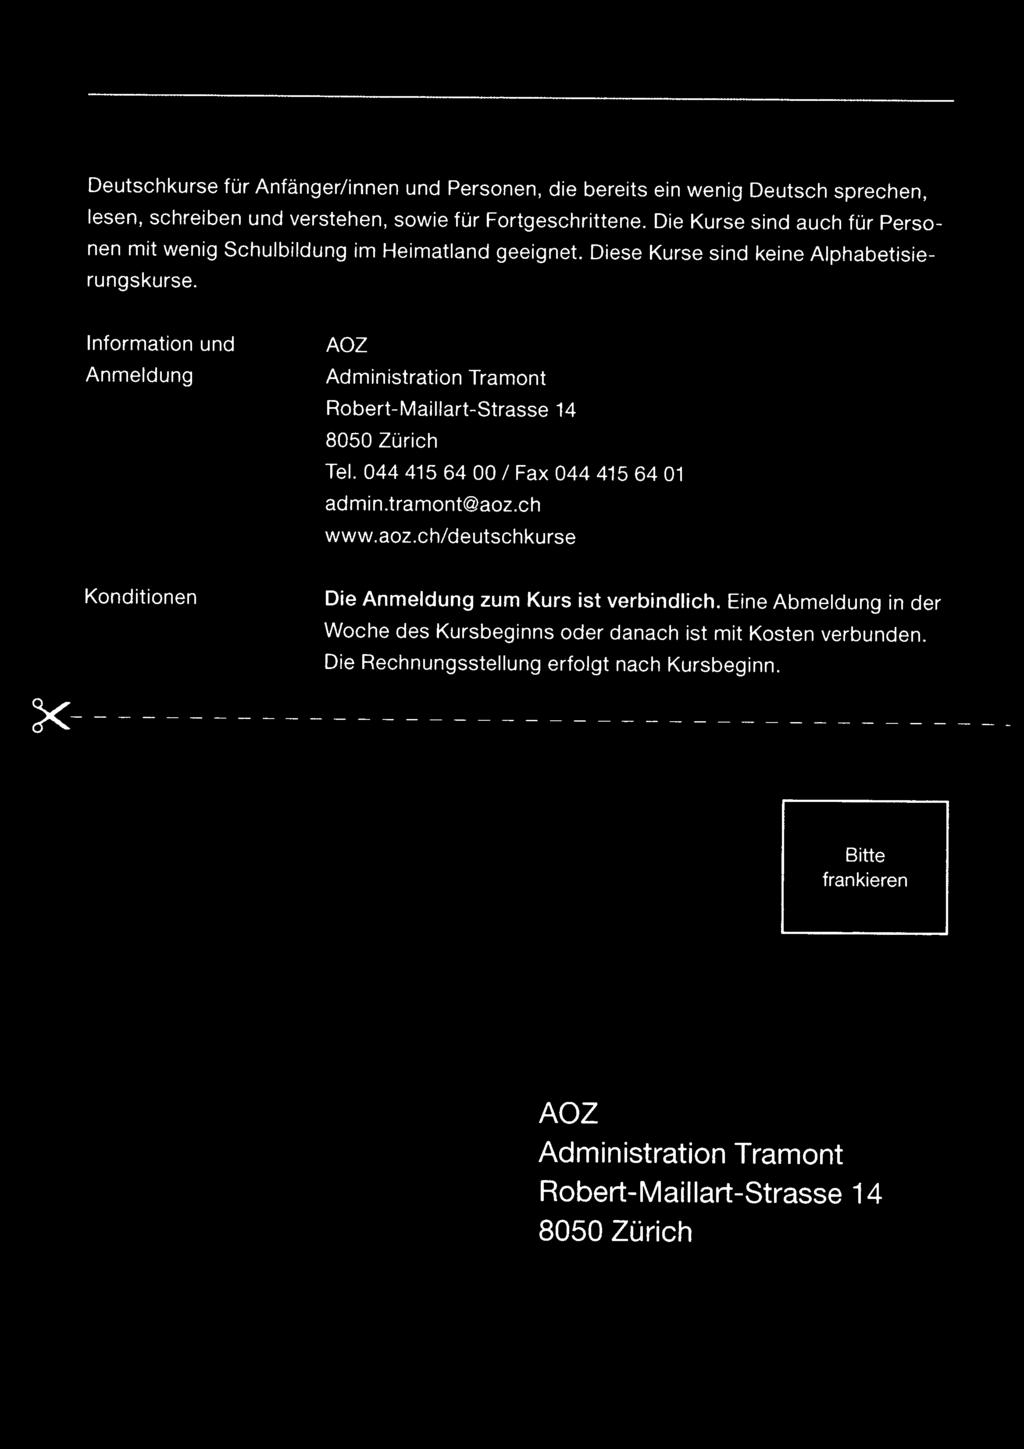 Information Anmeldung und AOZ Administration Tramont Robert-Maillart-Strasse 14 8050 Zürich Tel. 0444156400/ Fax 044 415 64 01 admin.tramont@aoz.